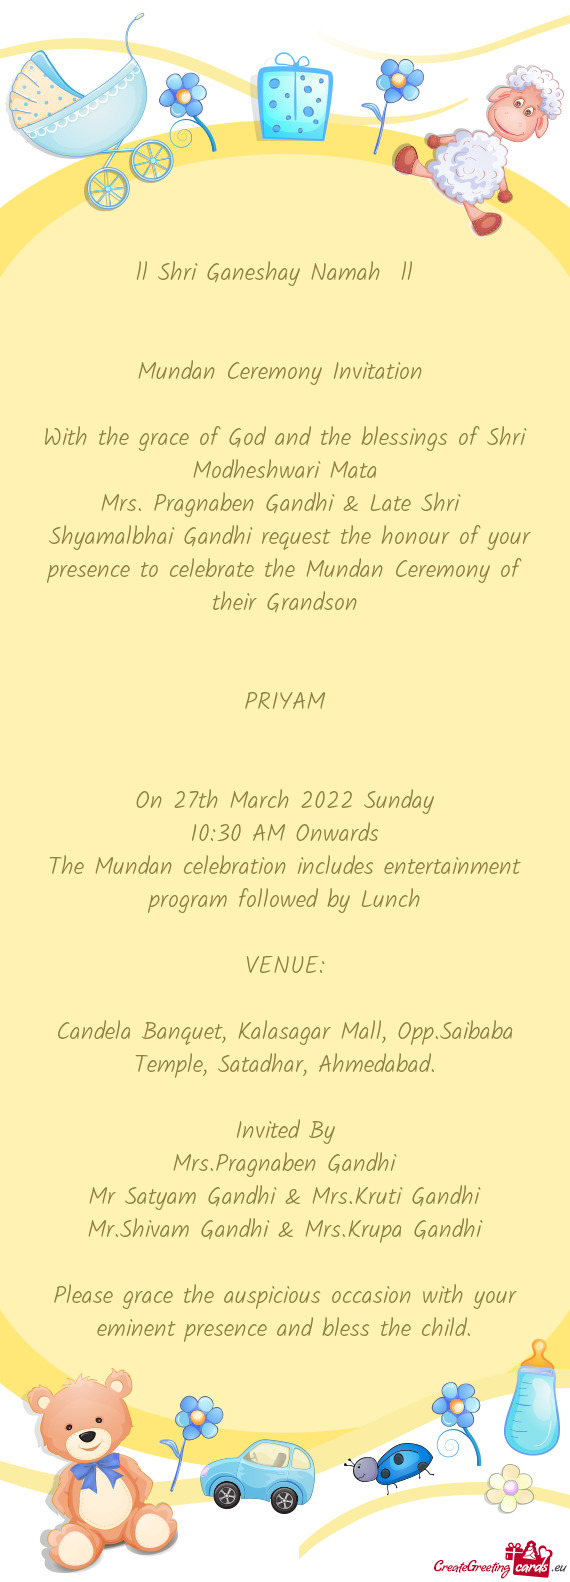 Mrs. Pragnaben Gandhi & Late Shri